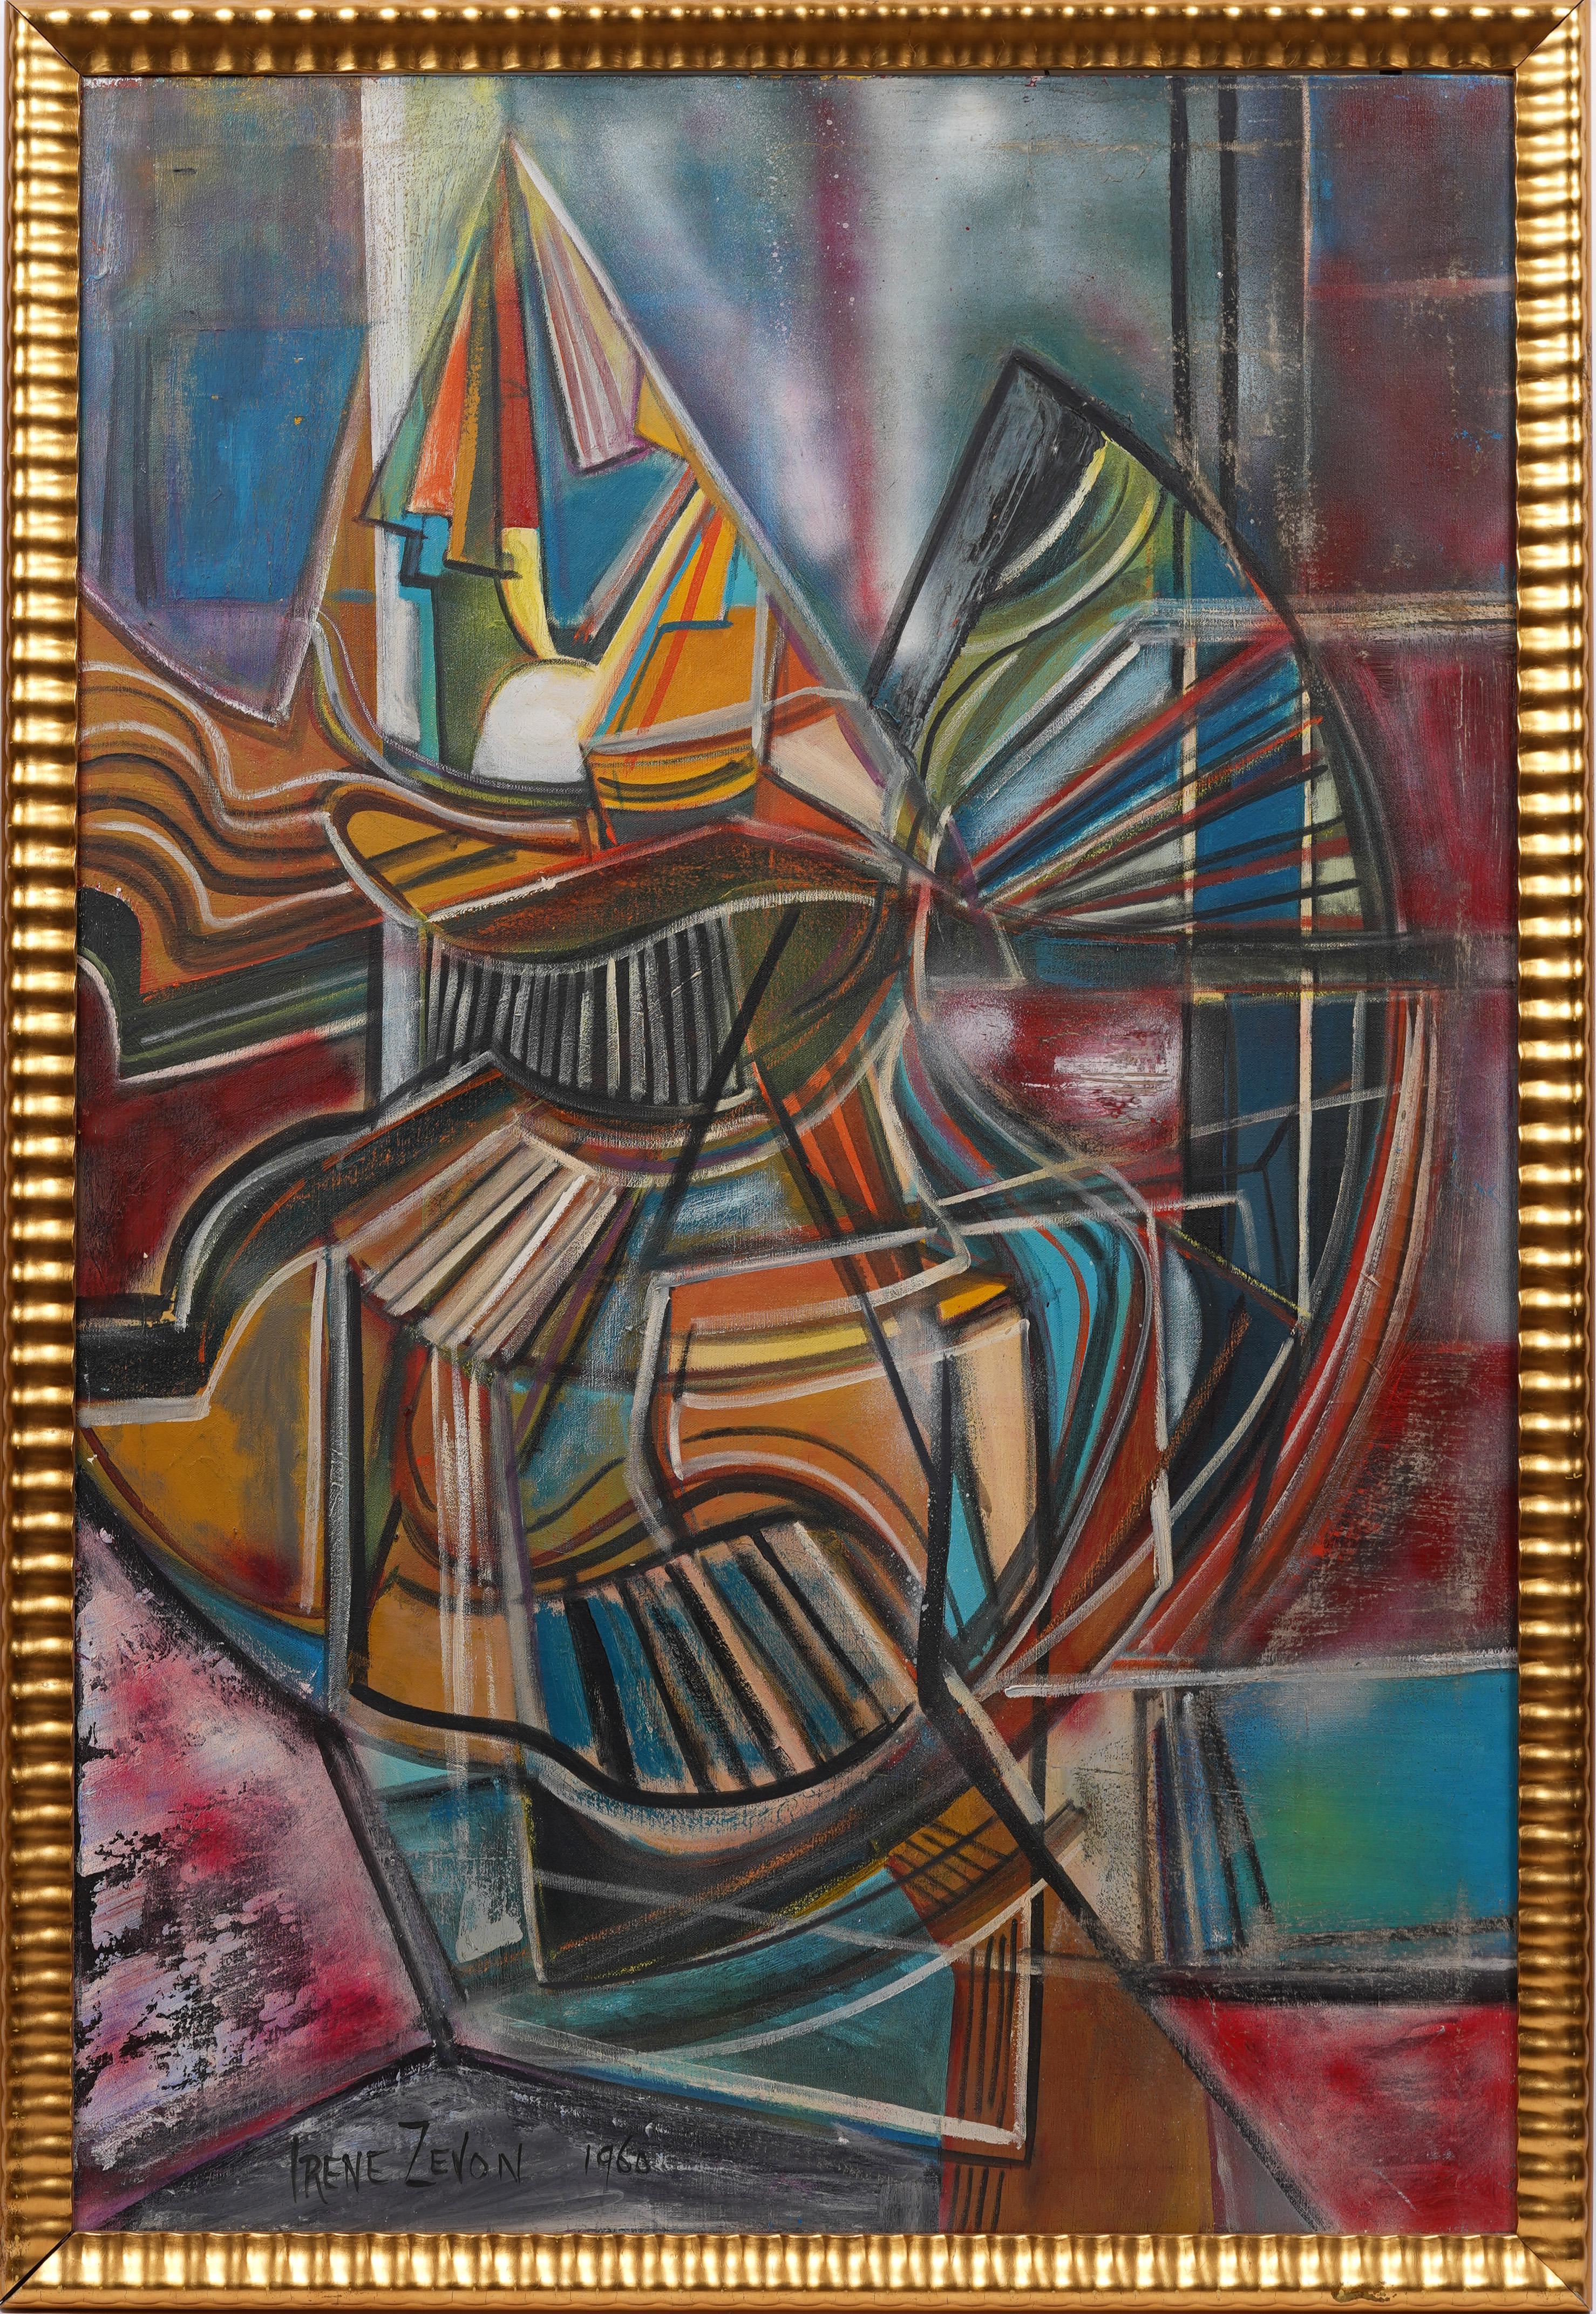 Ancienne peinture à l'huile abstraite expressionniste abstraite américaine féminine moderniste encadrée - Painting de Irene Zevon